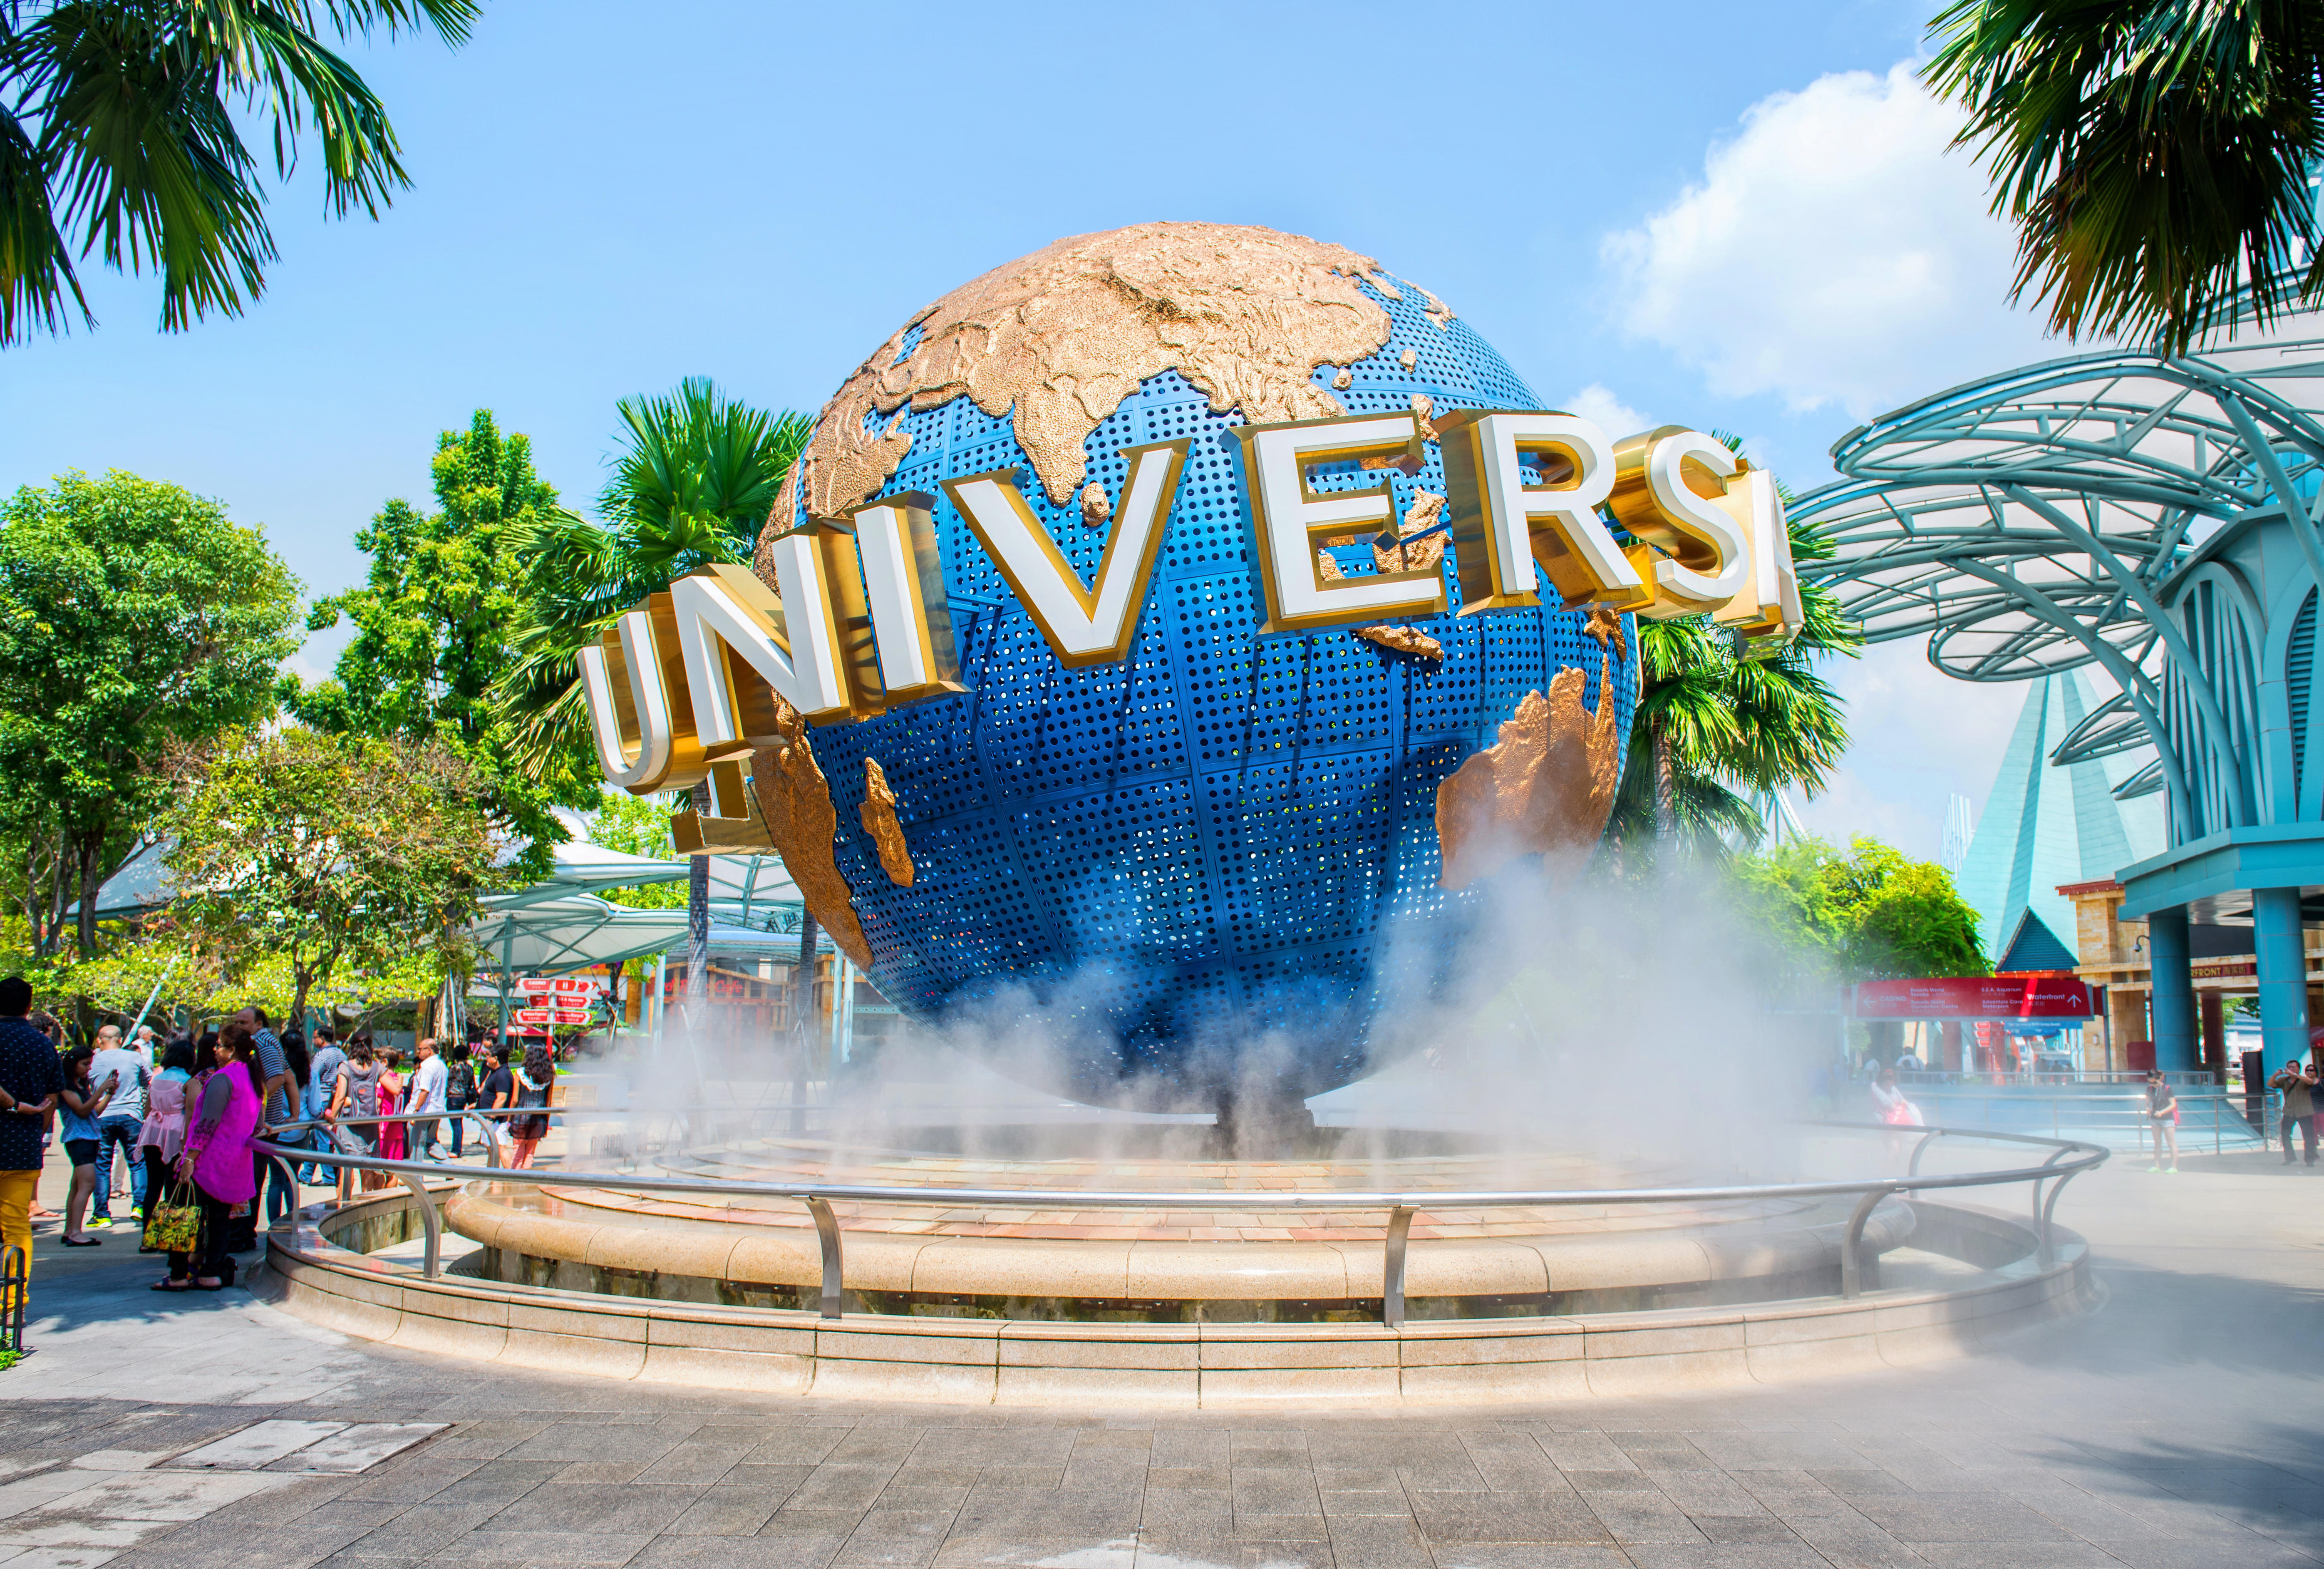 Combo Tour Of Universal Studios and Sea Aquarium Singapore